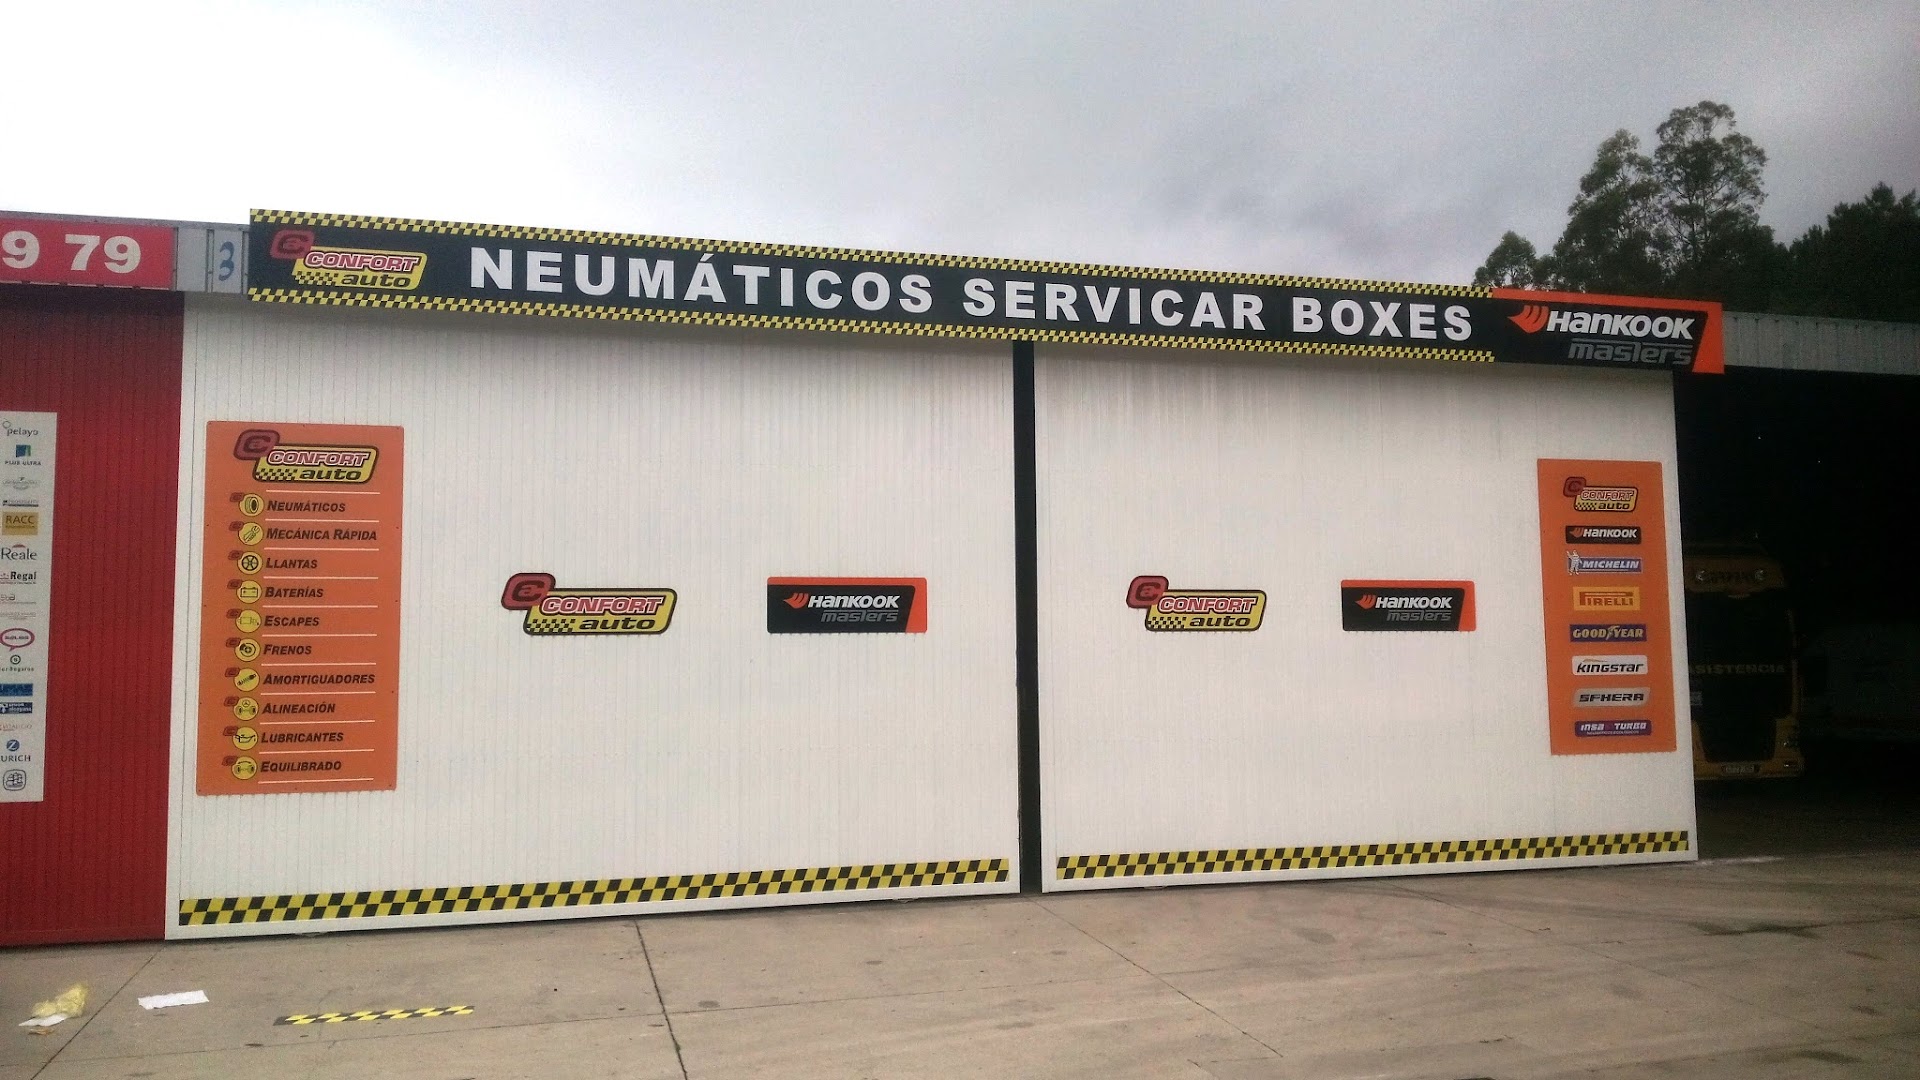 NEUMATICOS SERVICAR BOXES CONFORT AUTO